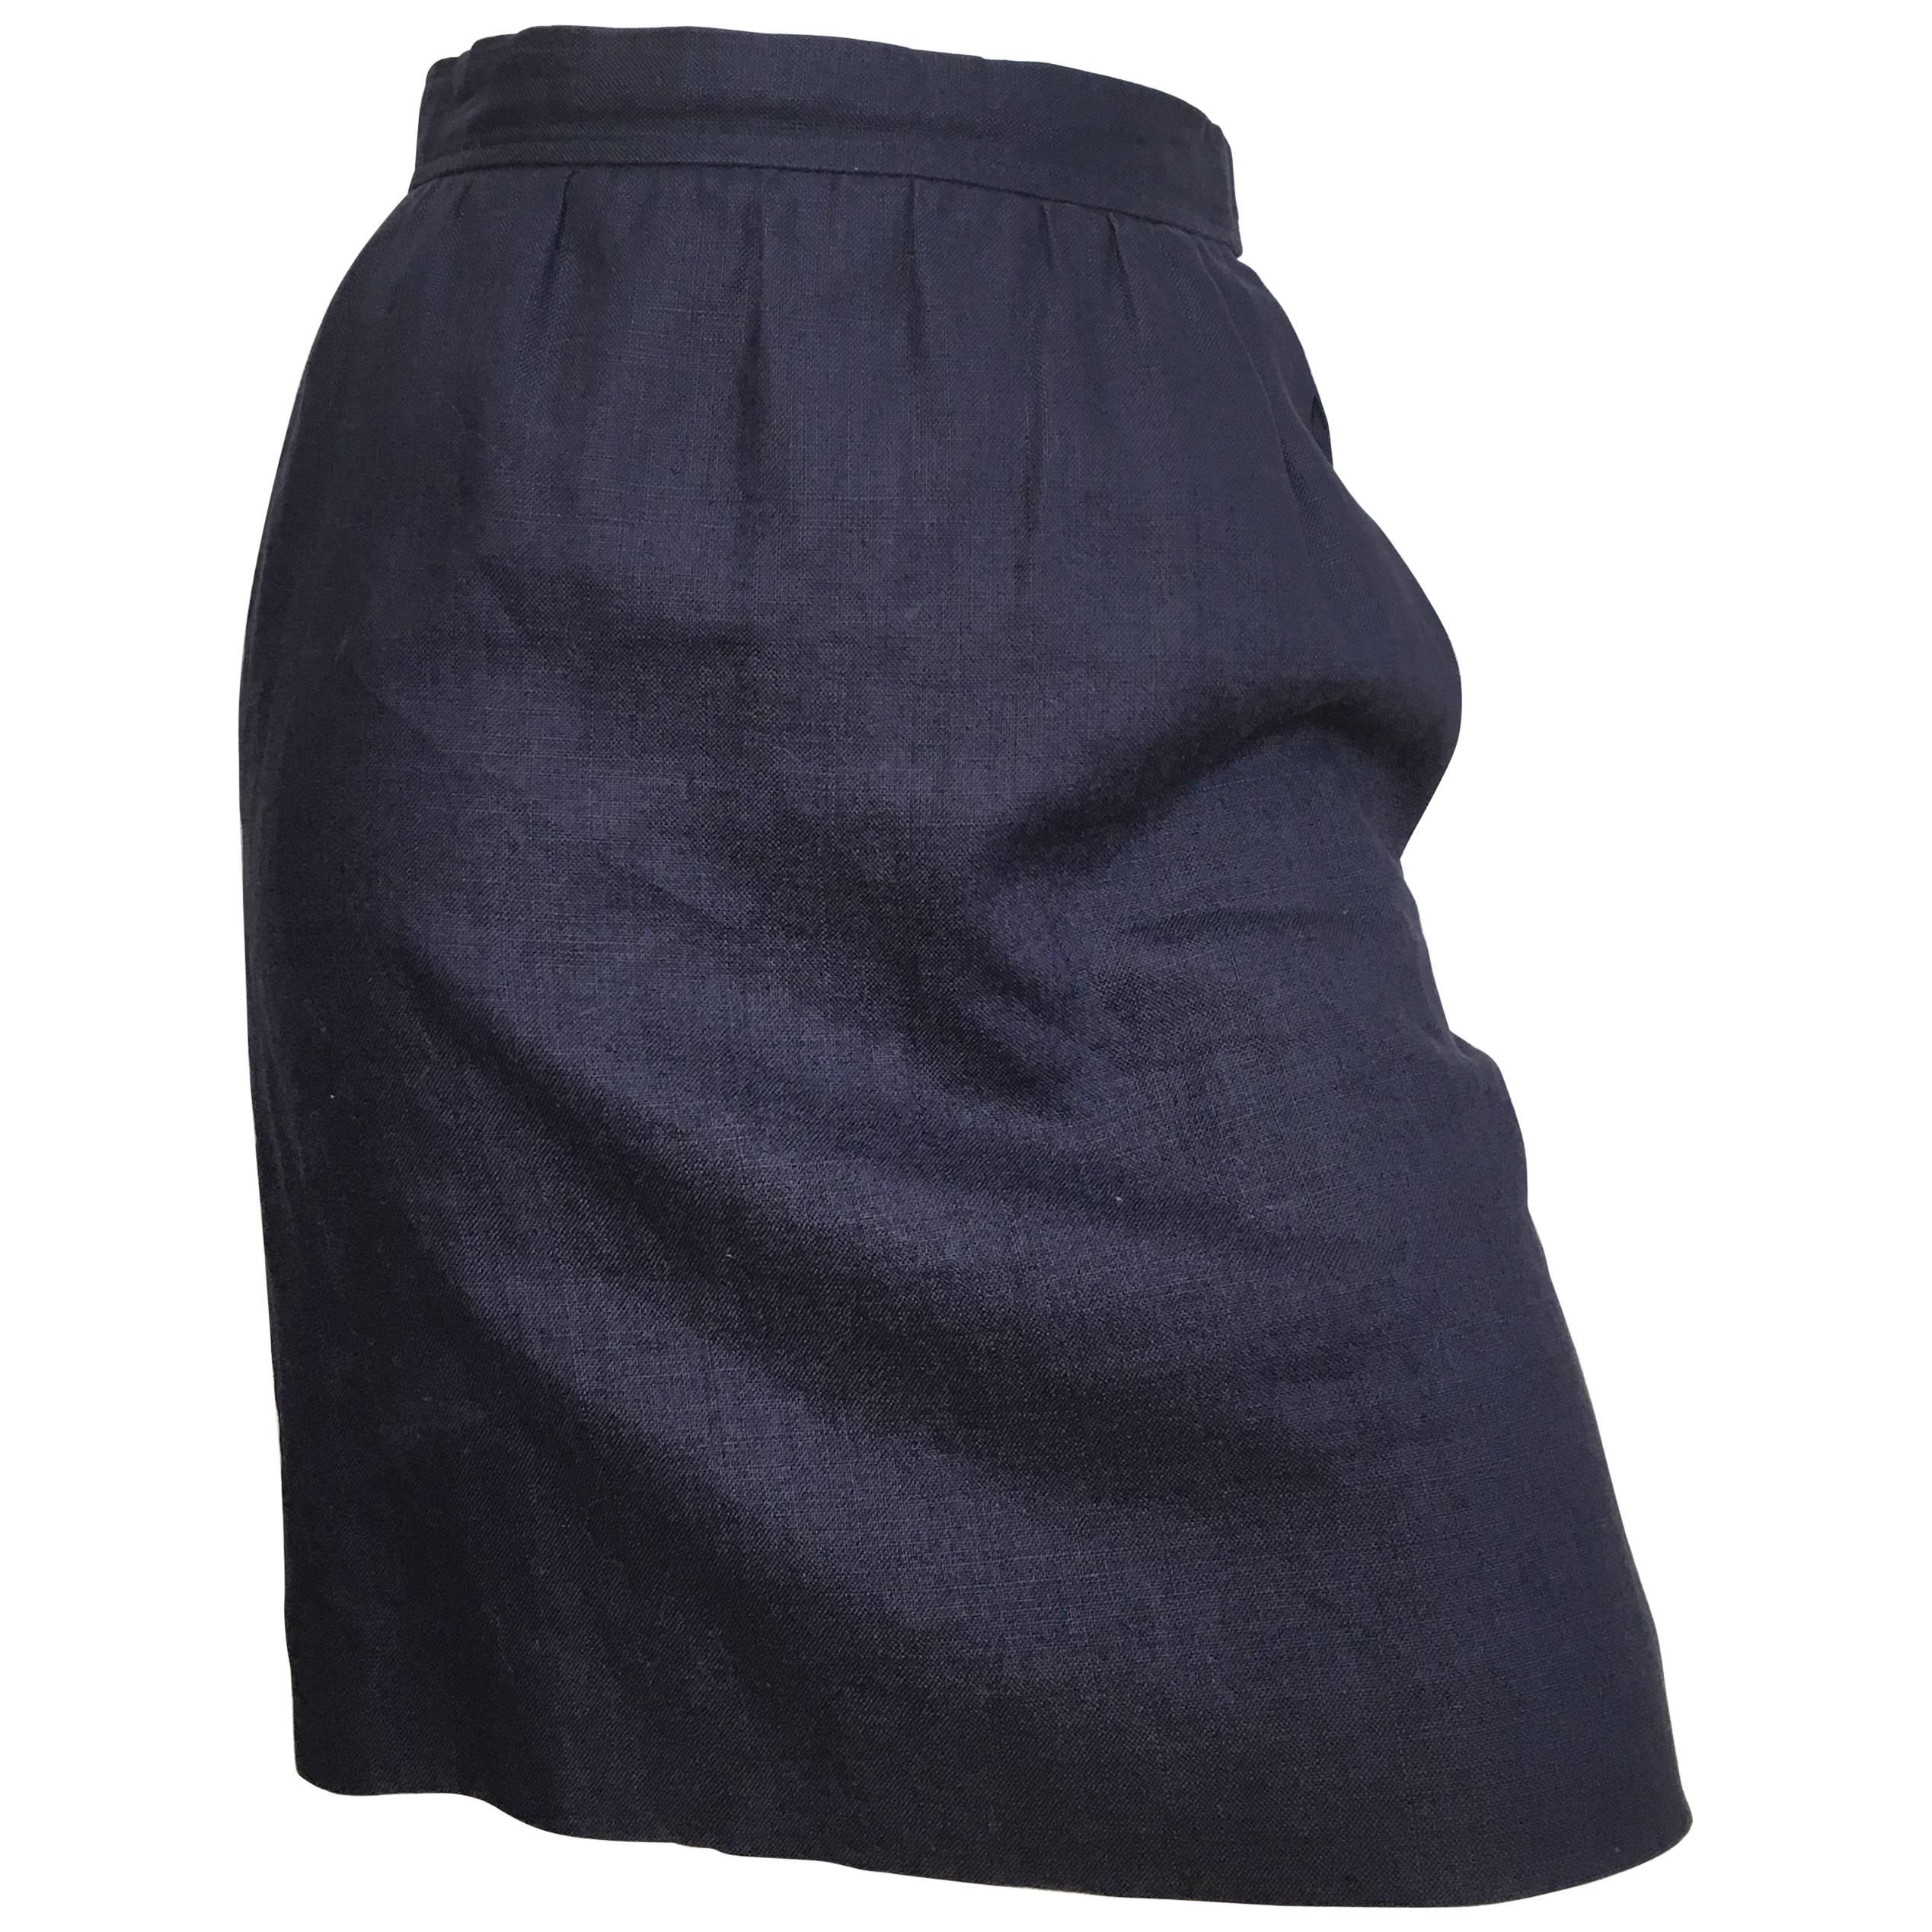 Saint Laurent Rive Gauche 1980s Navy Linen Pencil Skirt with Pockets Size 4. For Sale